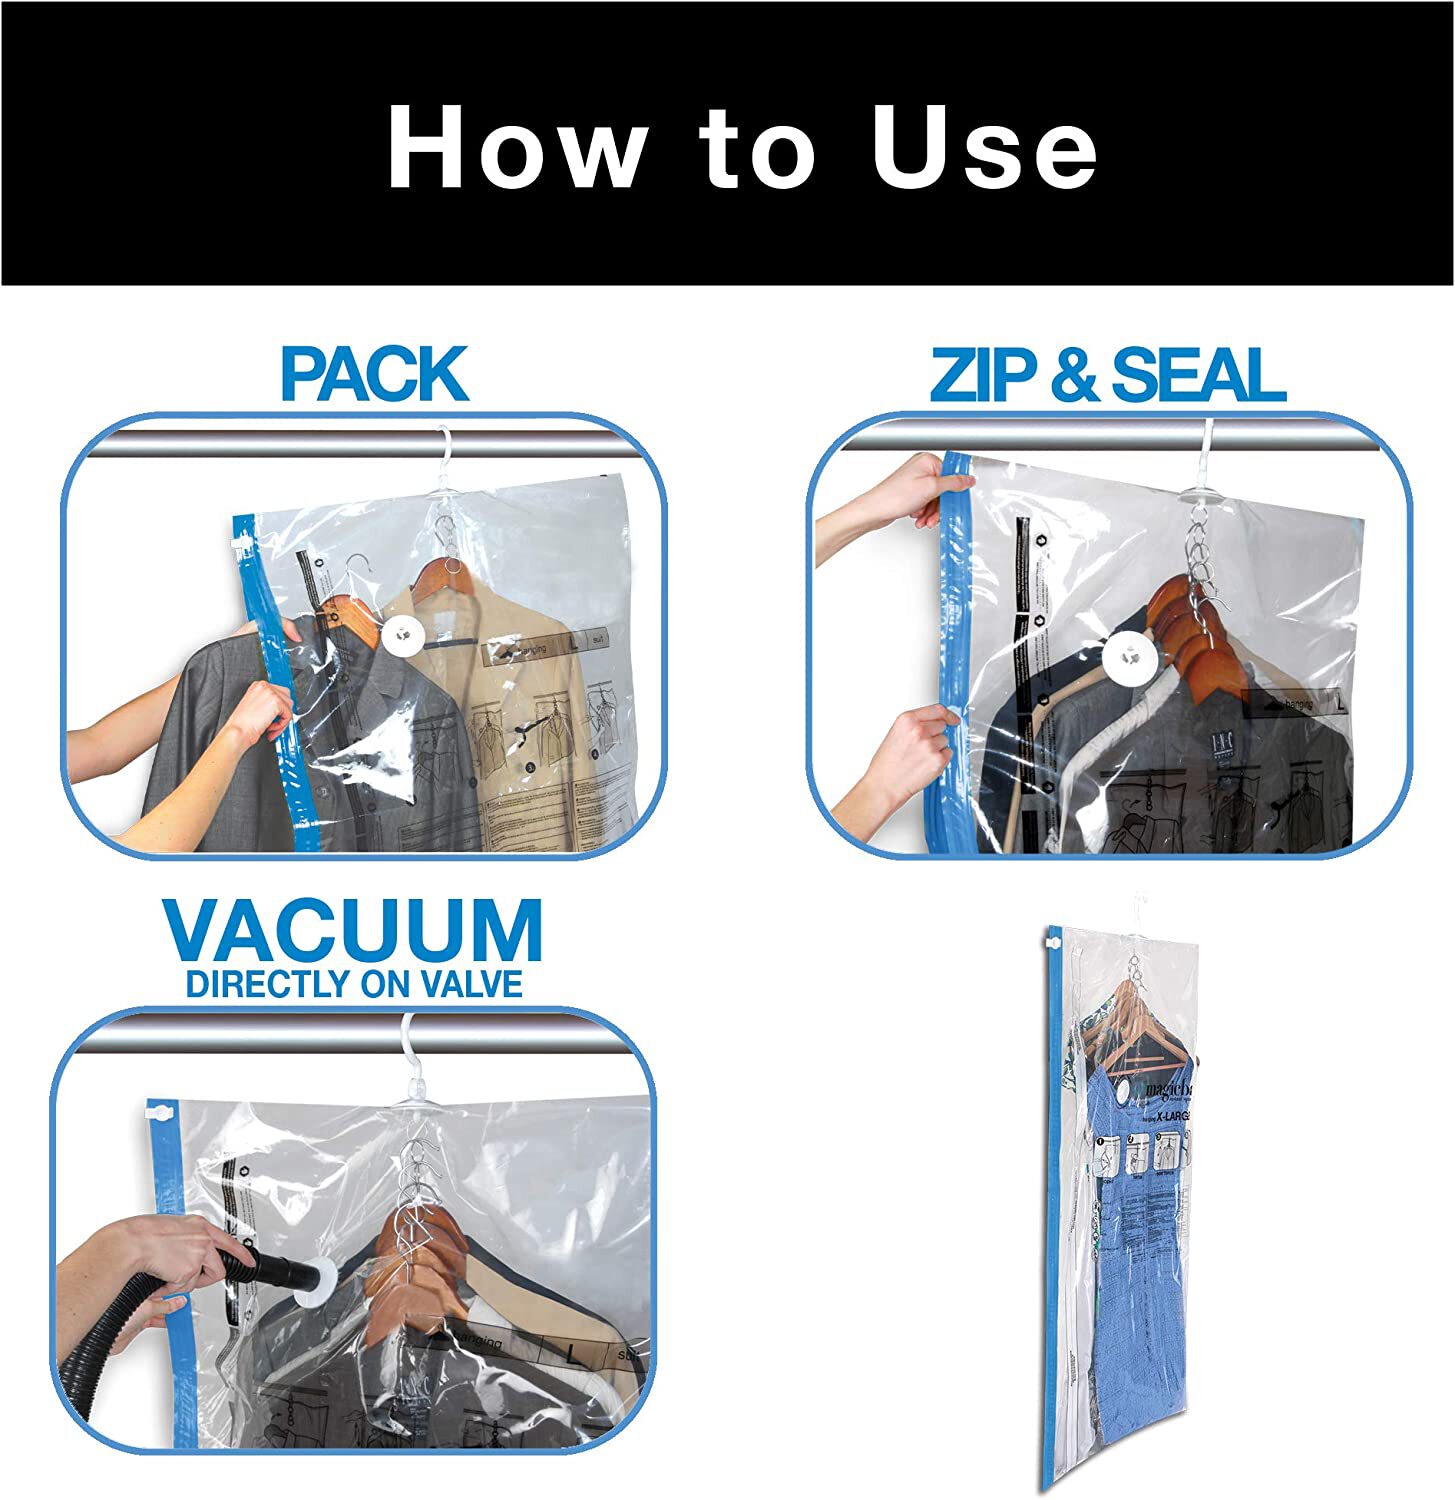 Shield N Seal Precut Vacuum Sealer Bag (15 x 20 / Box of 50) – Bag King